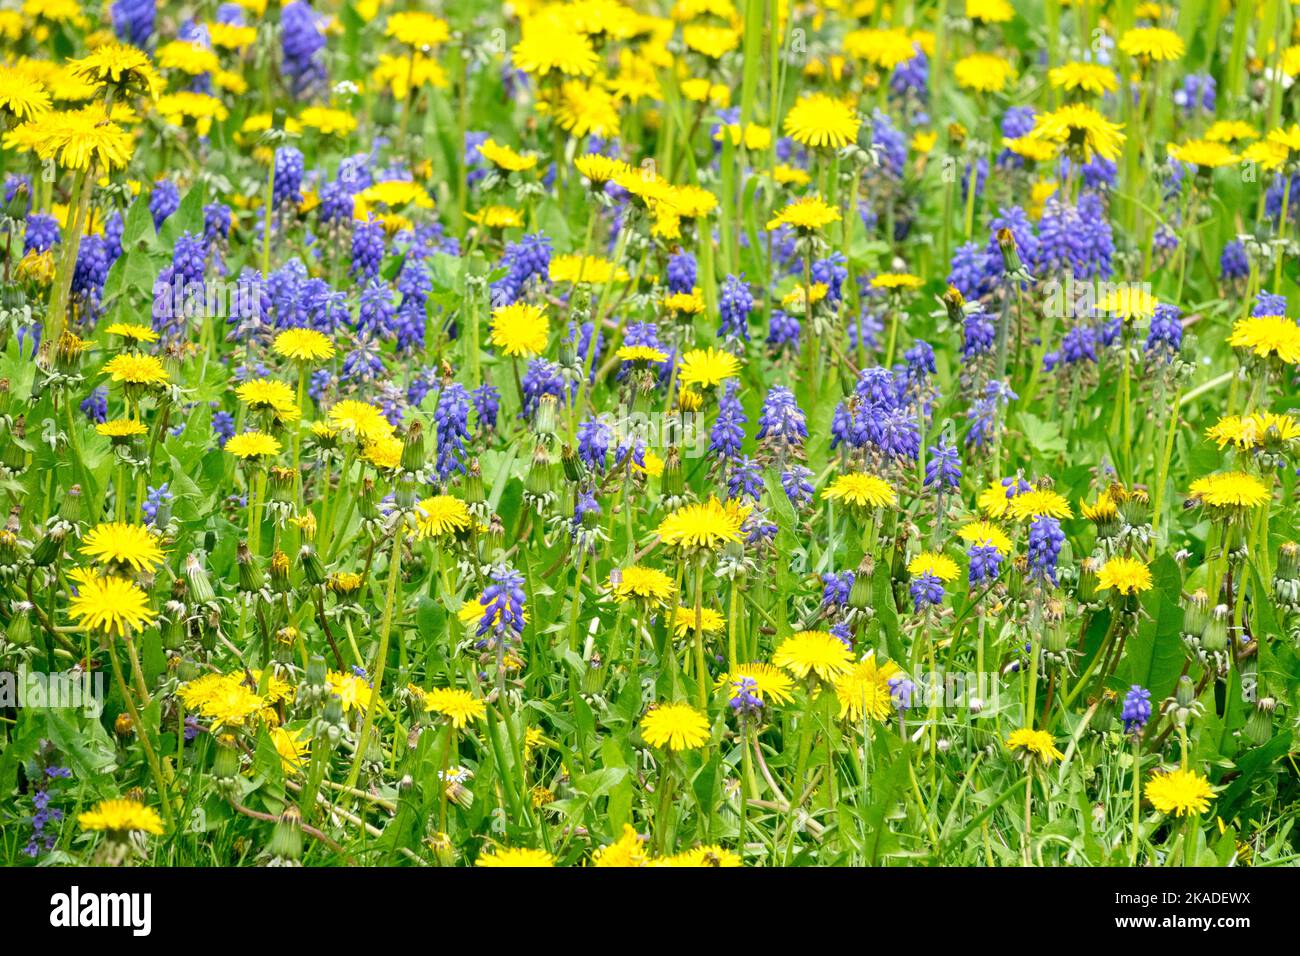 Löwenzahn Muscari Rasen Frühlingswiese blumig Gelb blaue Blumen Blau Gelb Löwenzahn Taraxacum officinale Muscari armeniacum Traubenhyazinthen Feld Stockfoto